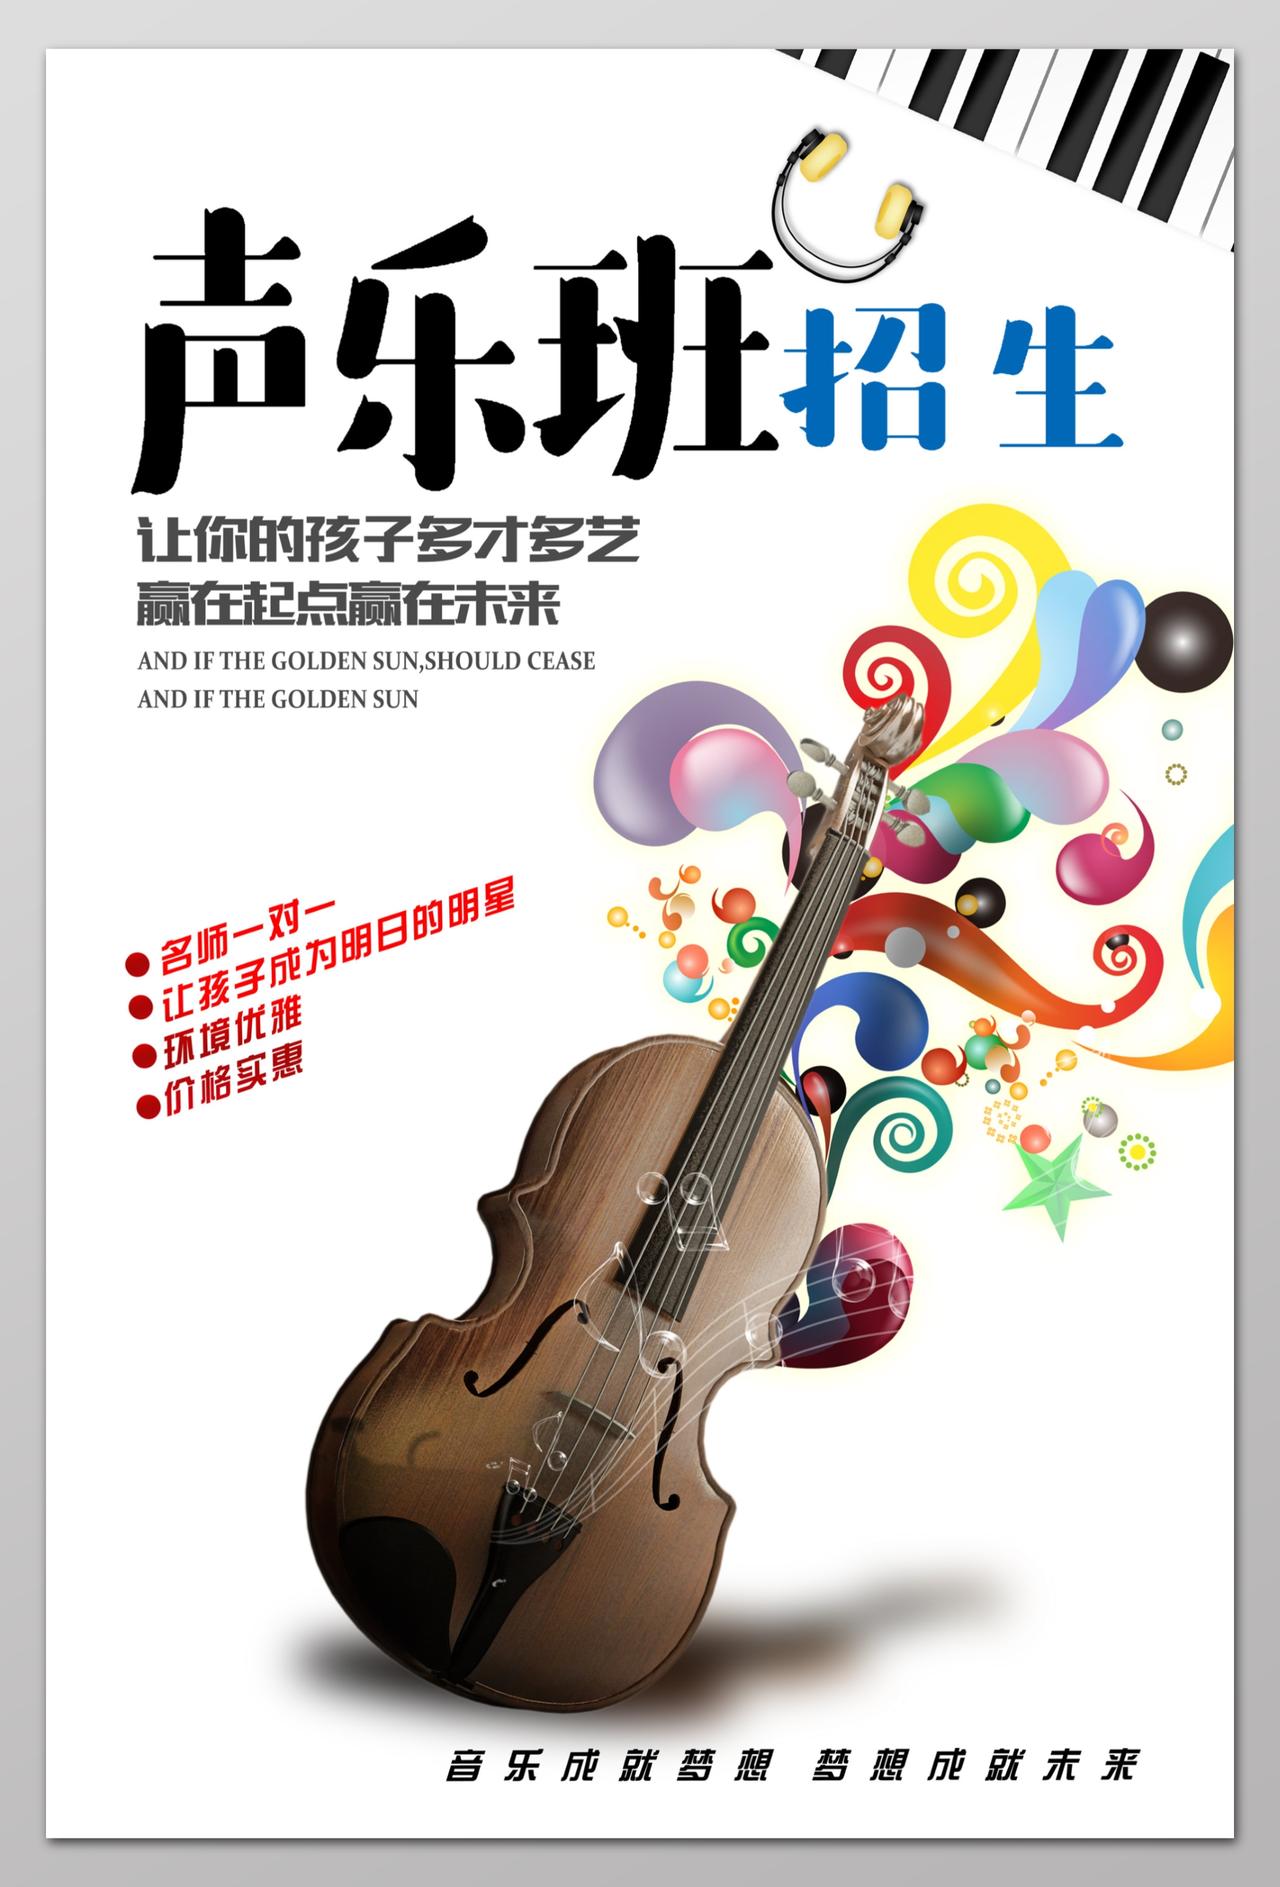 声乐班招生小提琴培训招生音乐艺术声乐海报设计